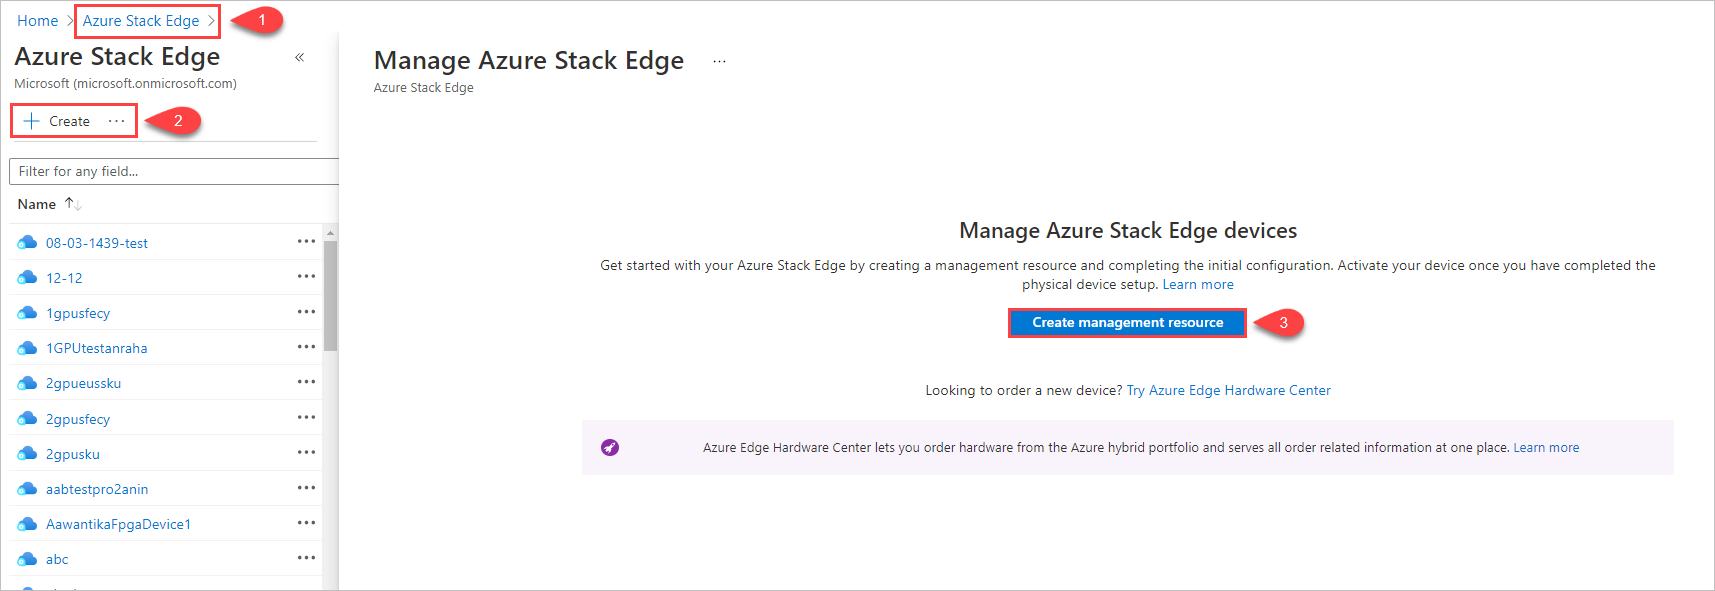 圖例顯示 3 個步驟，以開始在 Azure Stack Edge 中建立管理資源。